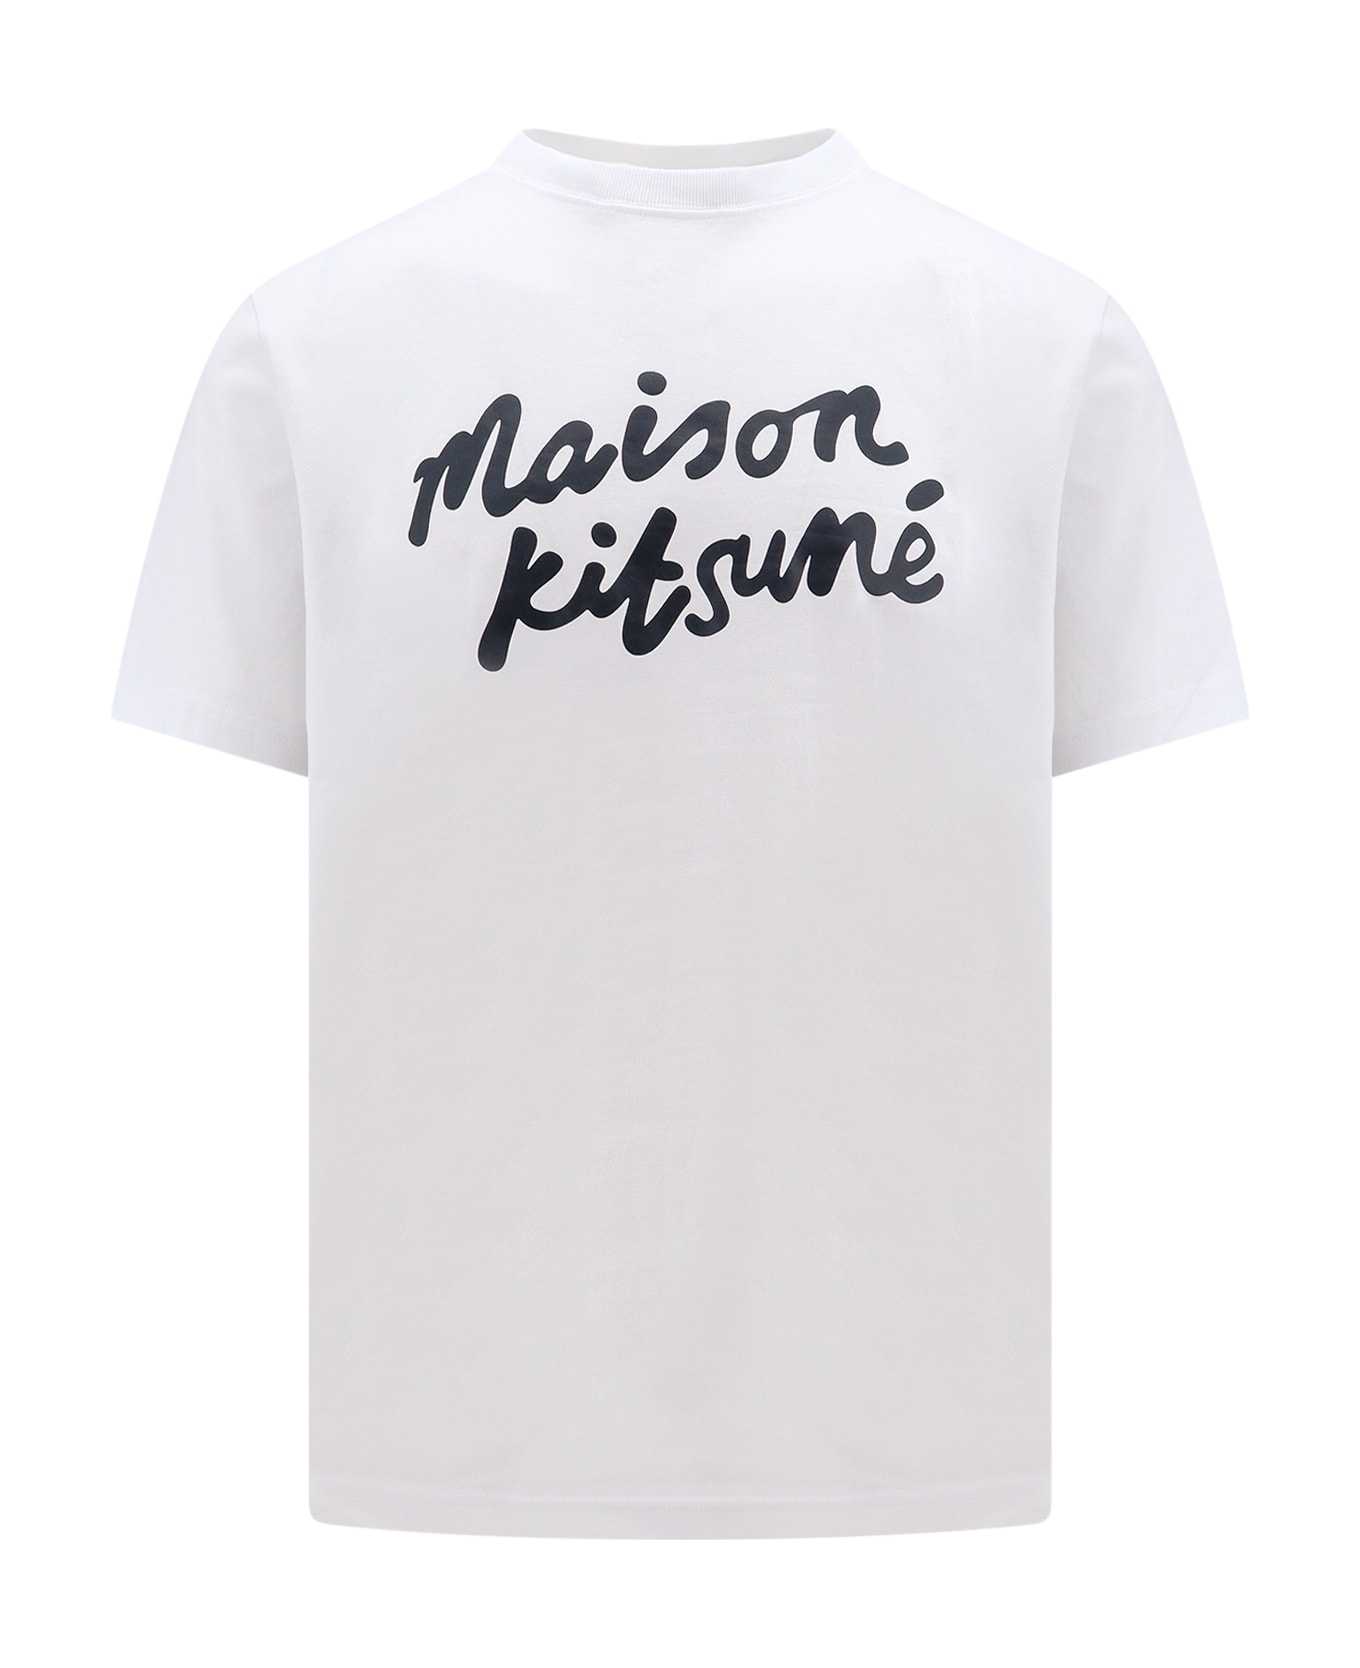 Maison Kitsuné T-shirt - Bianco